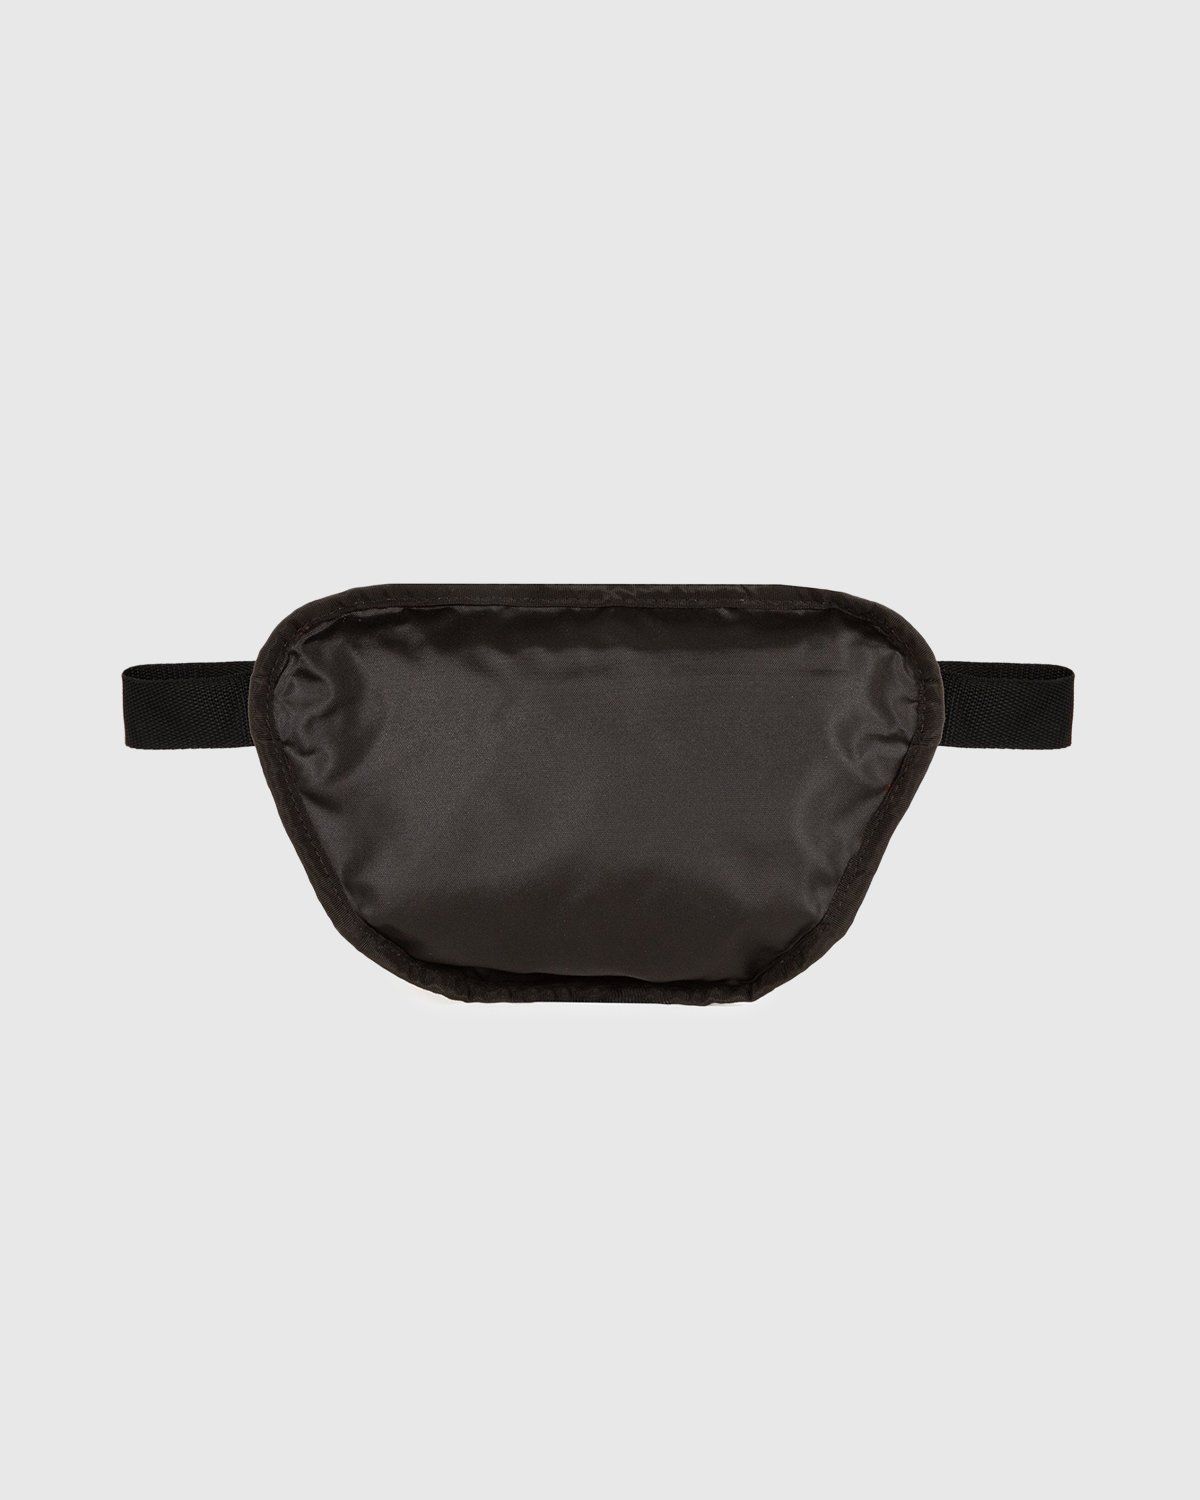 MM6 Maison Margiela x Eastpak – Belt Bag Black - Bags - Black - Image 3